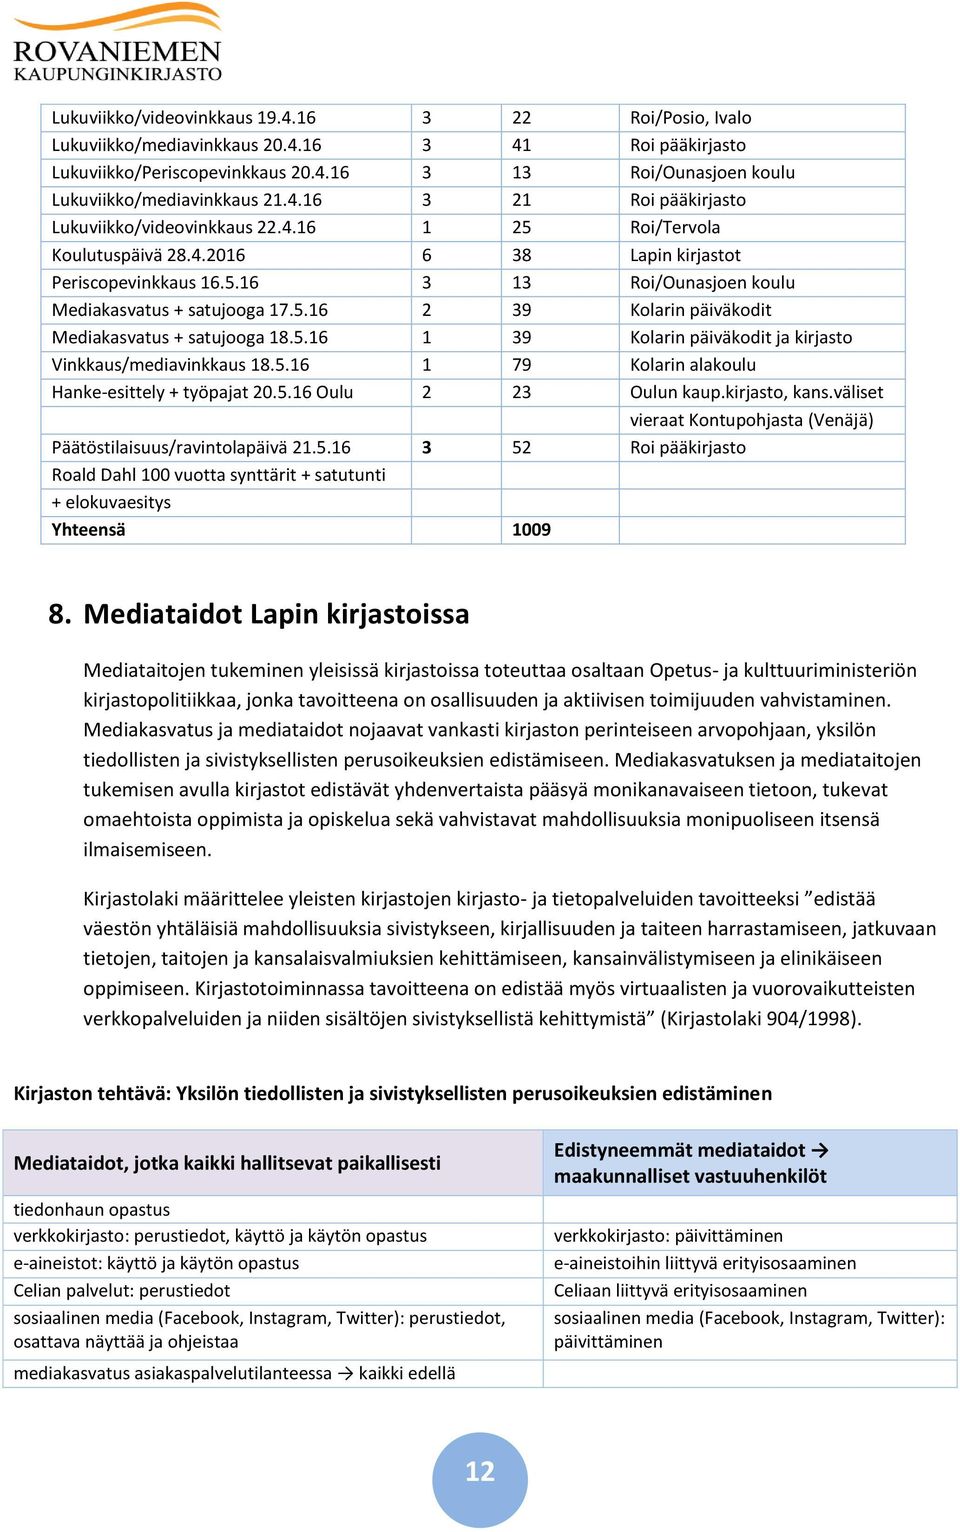 5.16 2 39 Kolarin päiväkodit Mediakasvatus + satujooga 18.5.16 1 39 Kolarin päiväkodit ja kirjasto Vinkkaus/mediavinkkaus 18.5.16 1 79 Kolarin alakoulu Hanke-esittely + työpajat 20.5.16 Oulu 2 23 Oulun kaup.